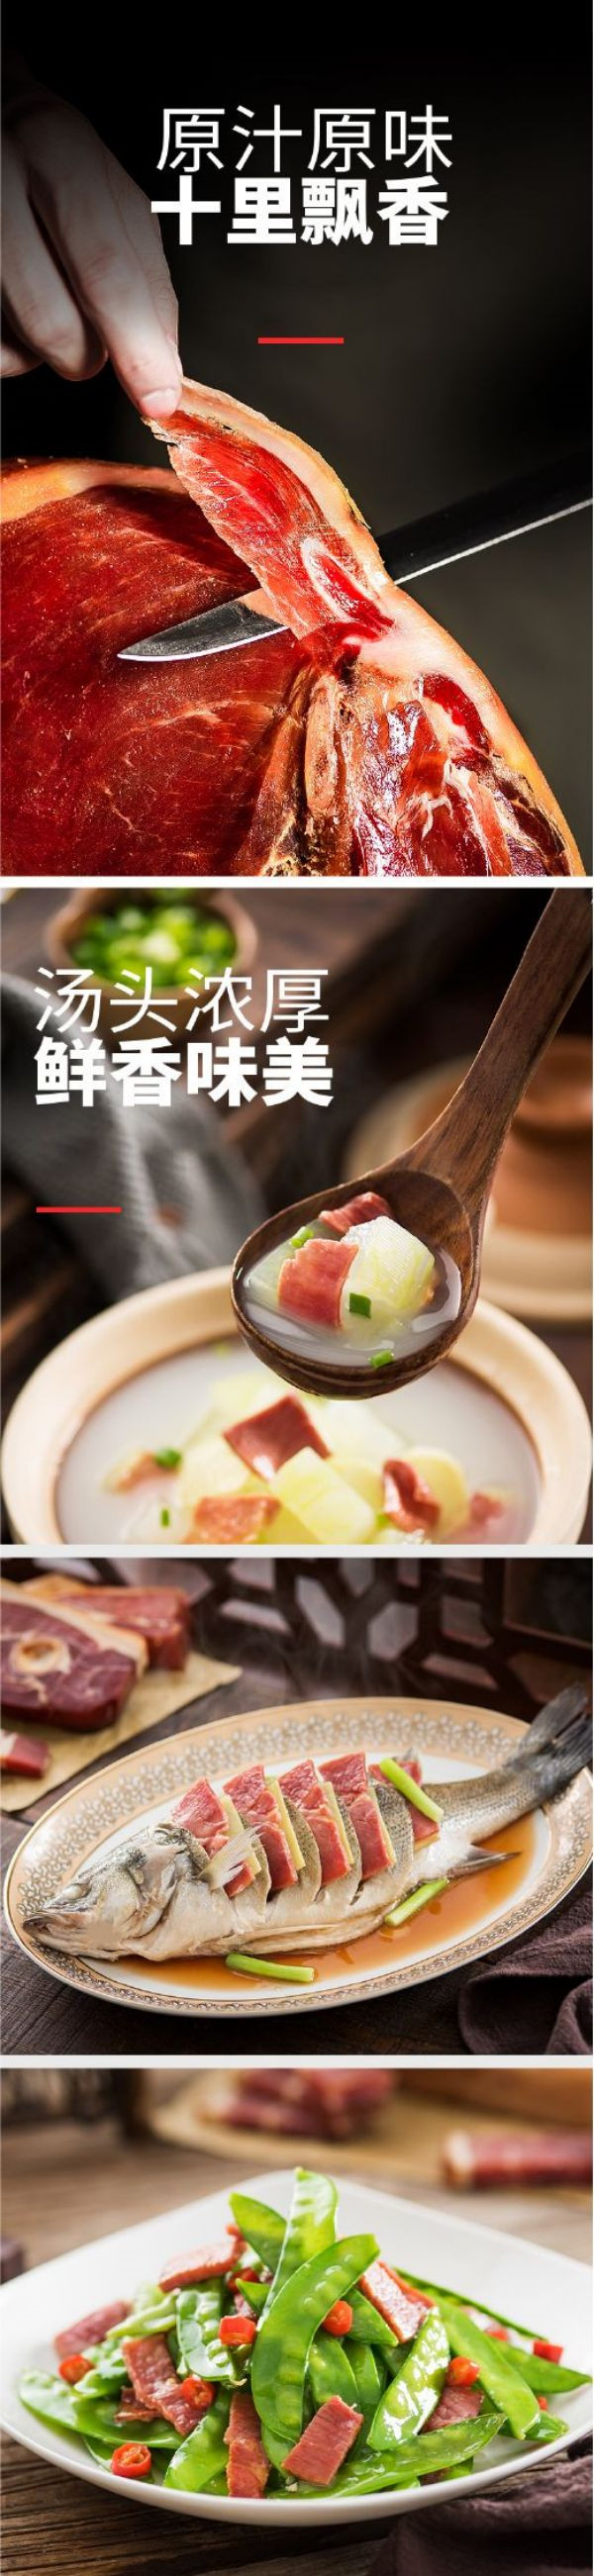  天金 金华火腿 火腿片100g 传统古法制作 煲汤首选 营养价值高